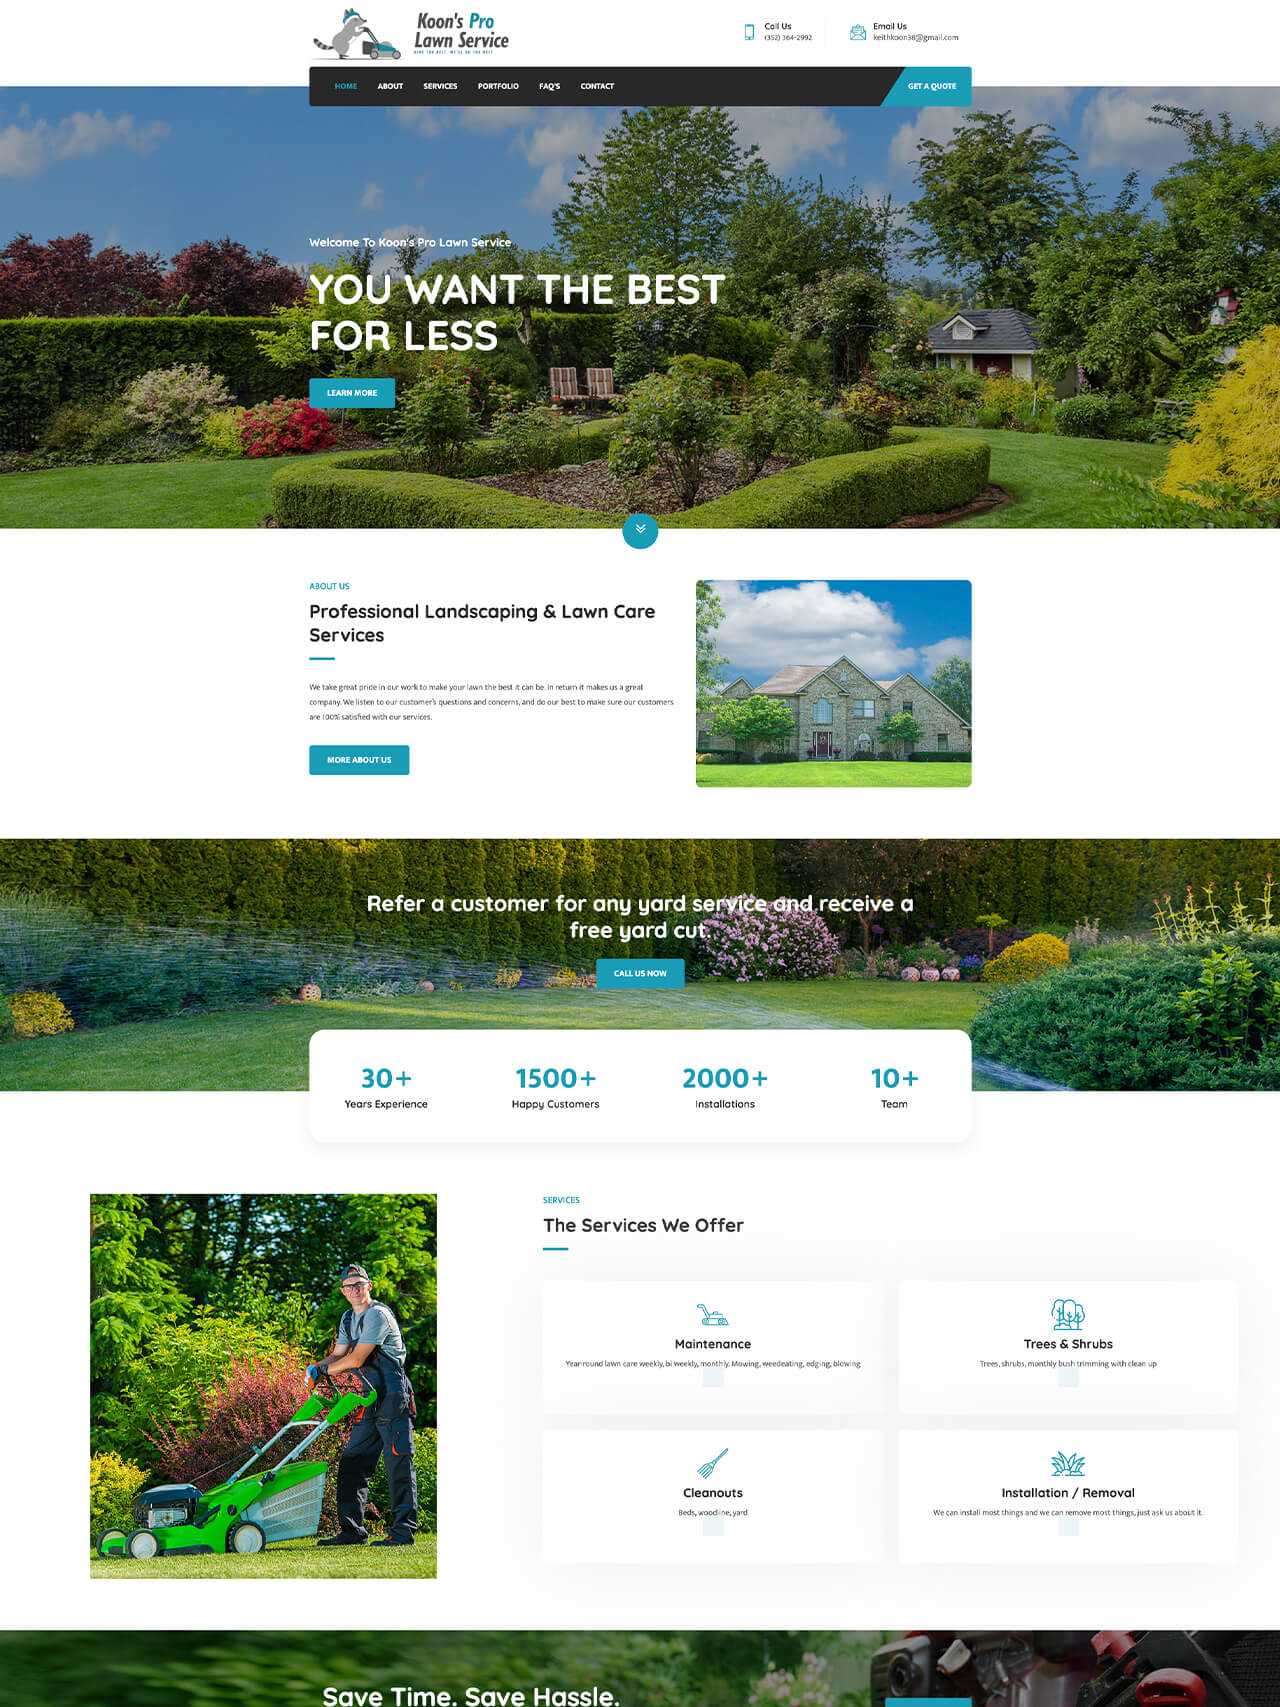 Koon's Pro Lawn Service Website